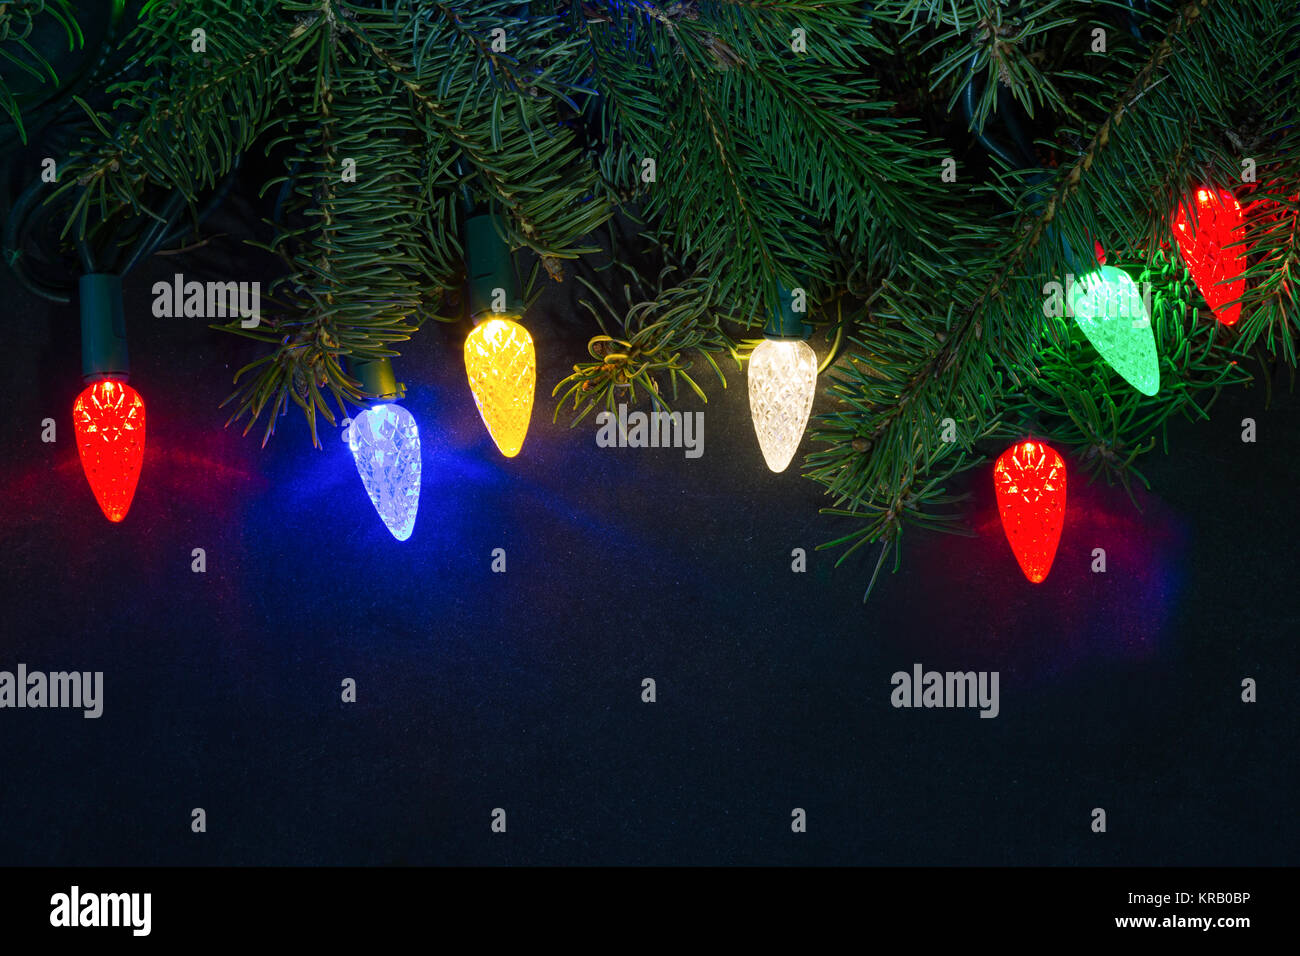 Weihnachtsbeleuchtung und Evergreens vor einem dunklen Hintergrund. Stockfoto